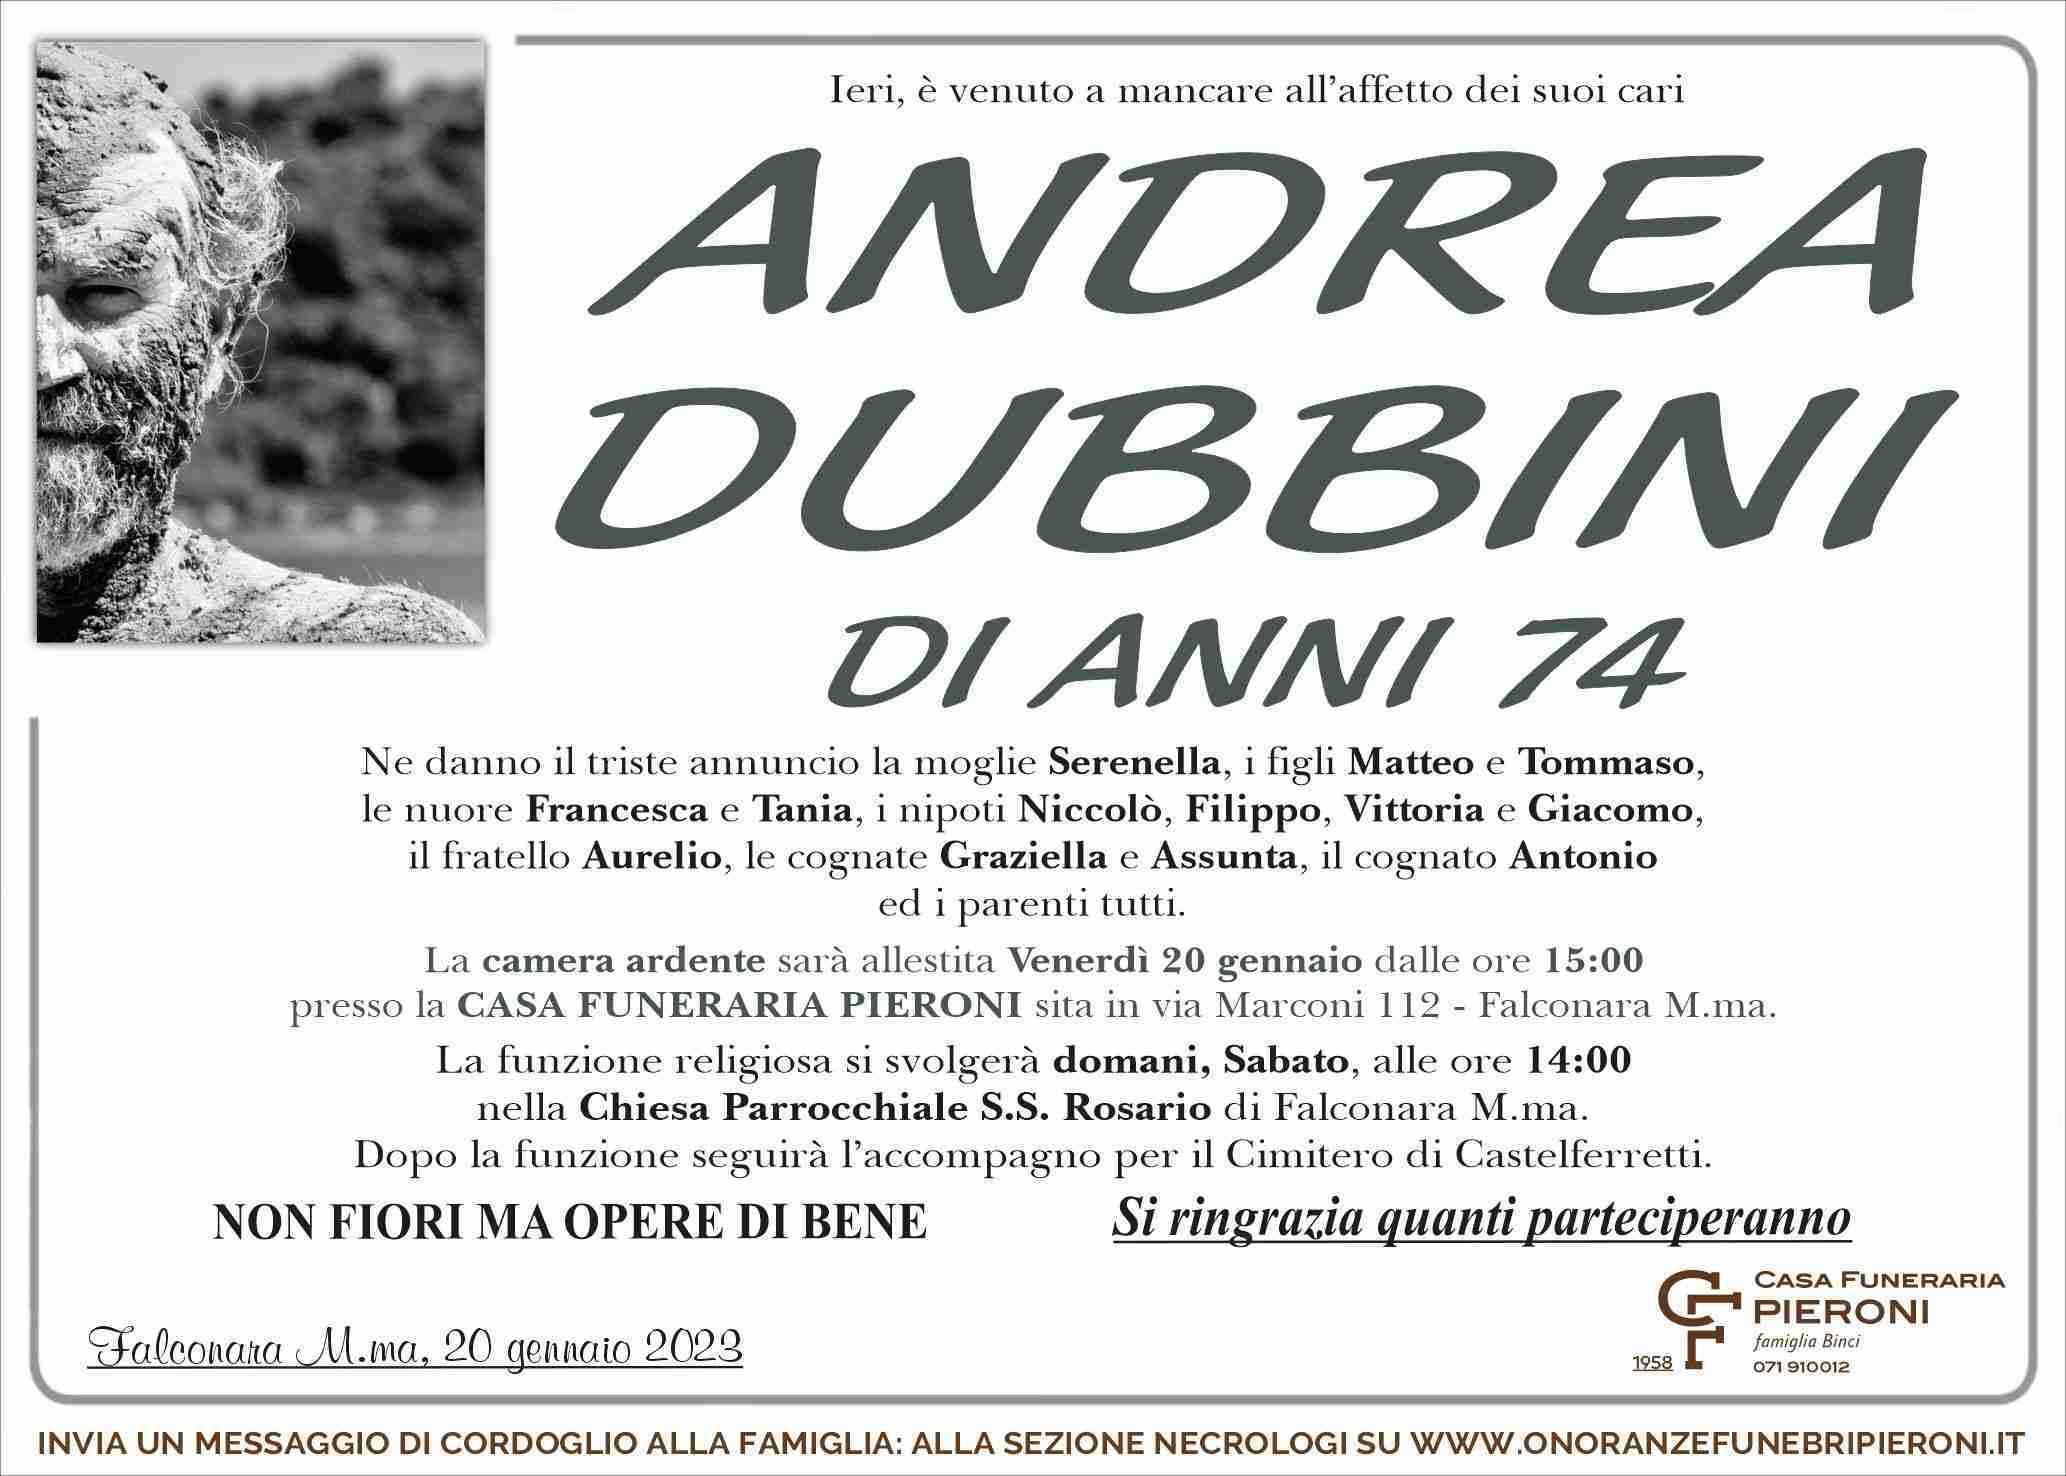 Andrea Dubbini